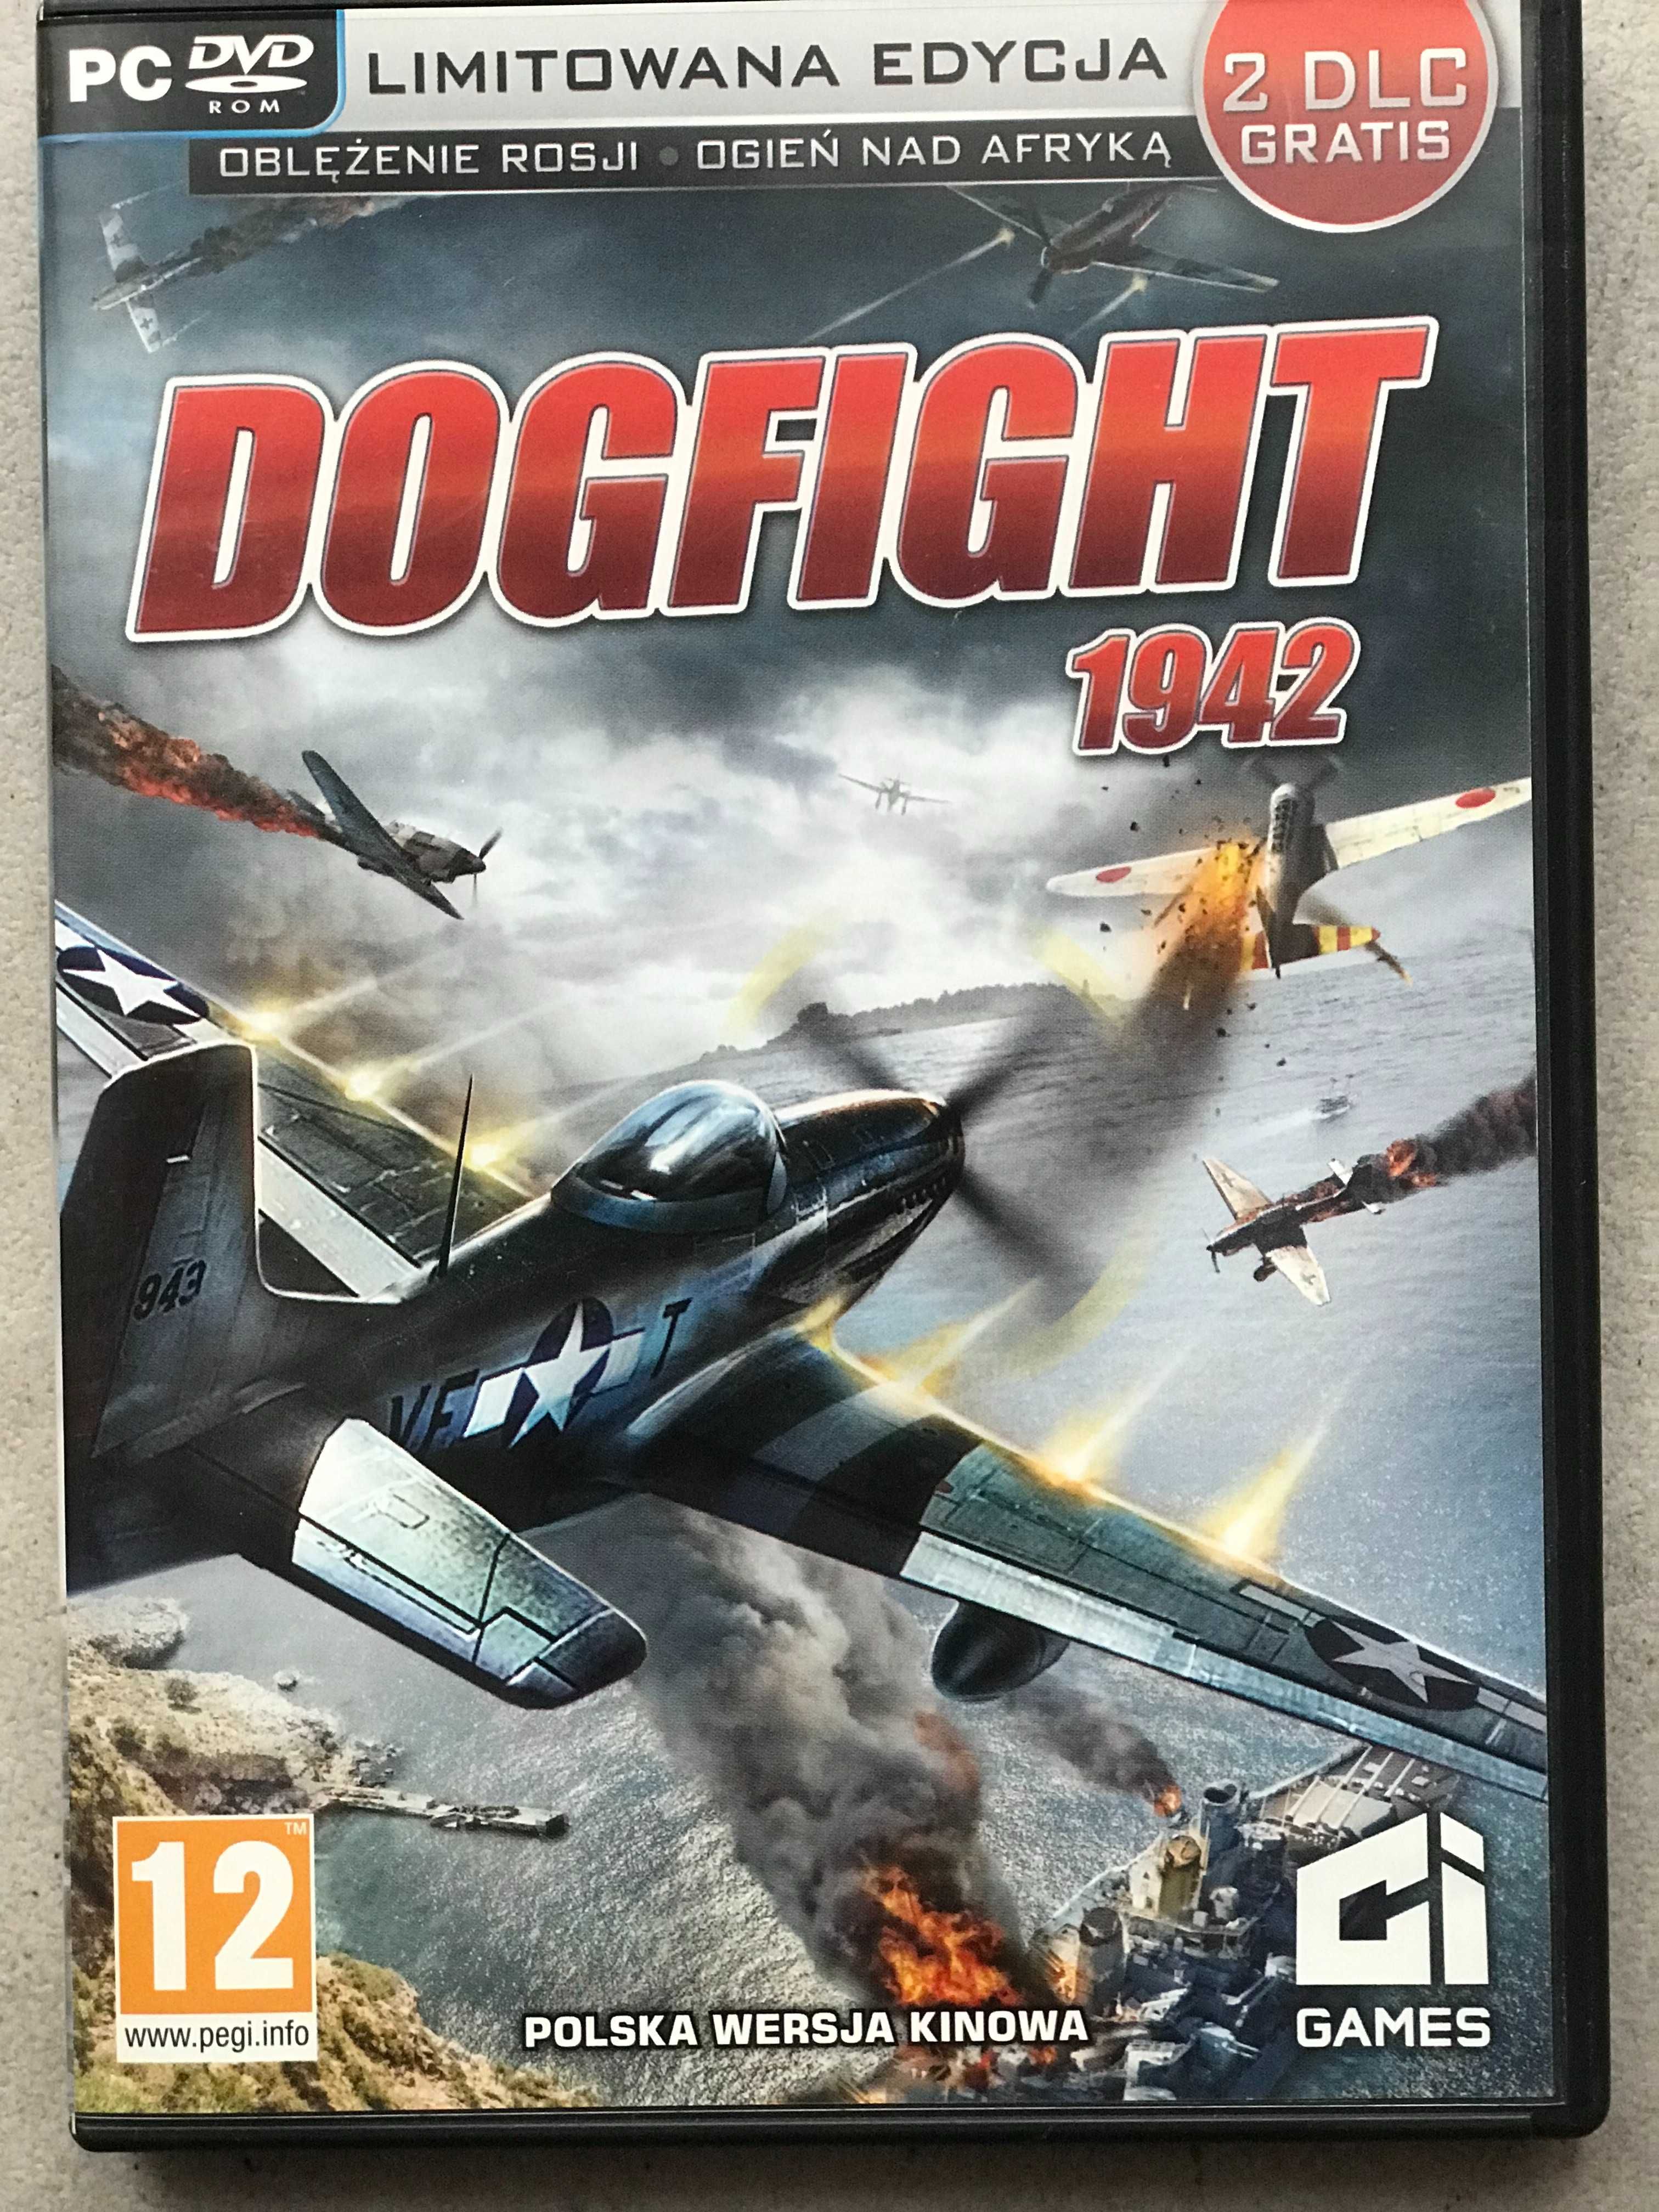 Dogfight 1942 PC/DVD, limitowana edycja.